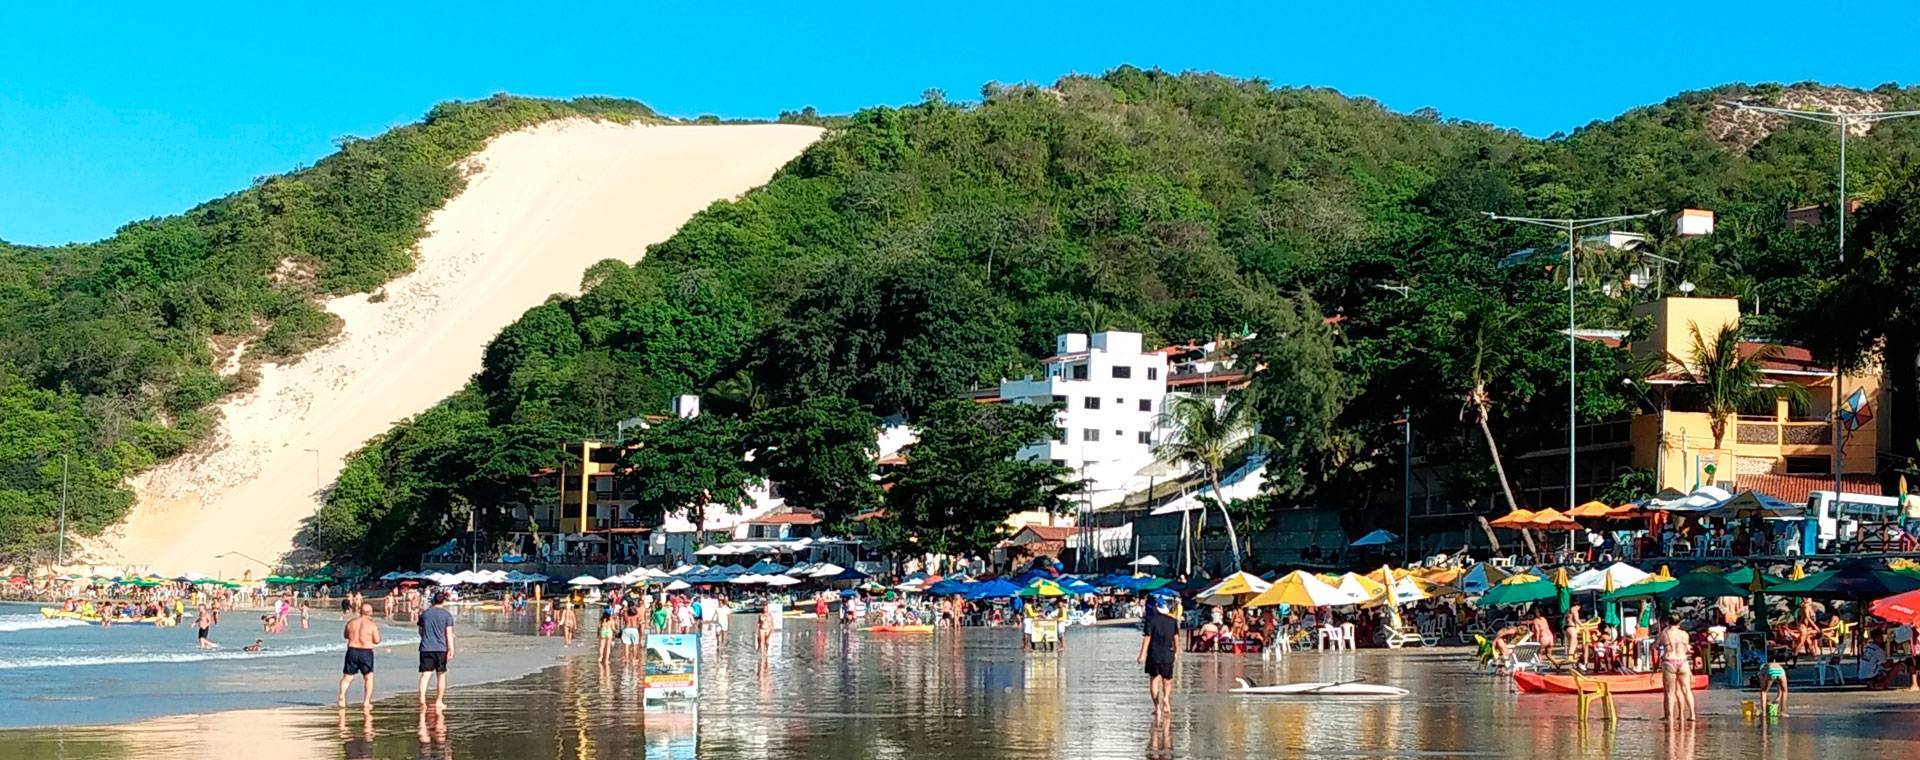 Natal - Pacotes de Viagens, Excursões, Hotéis - Mar-Tha Rio